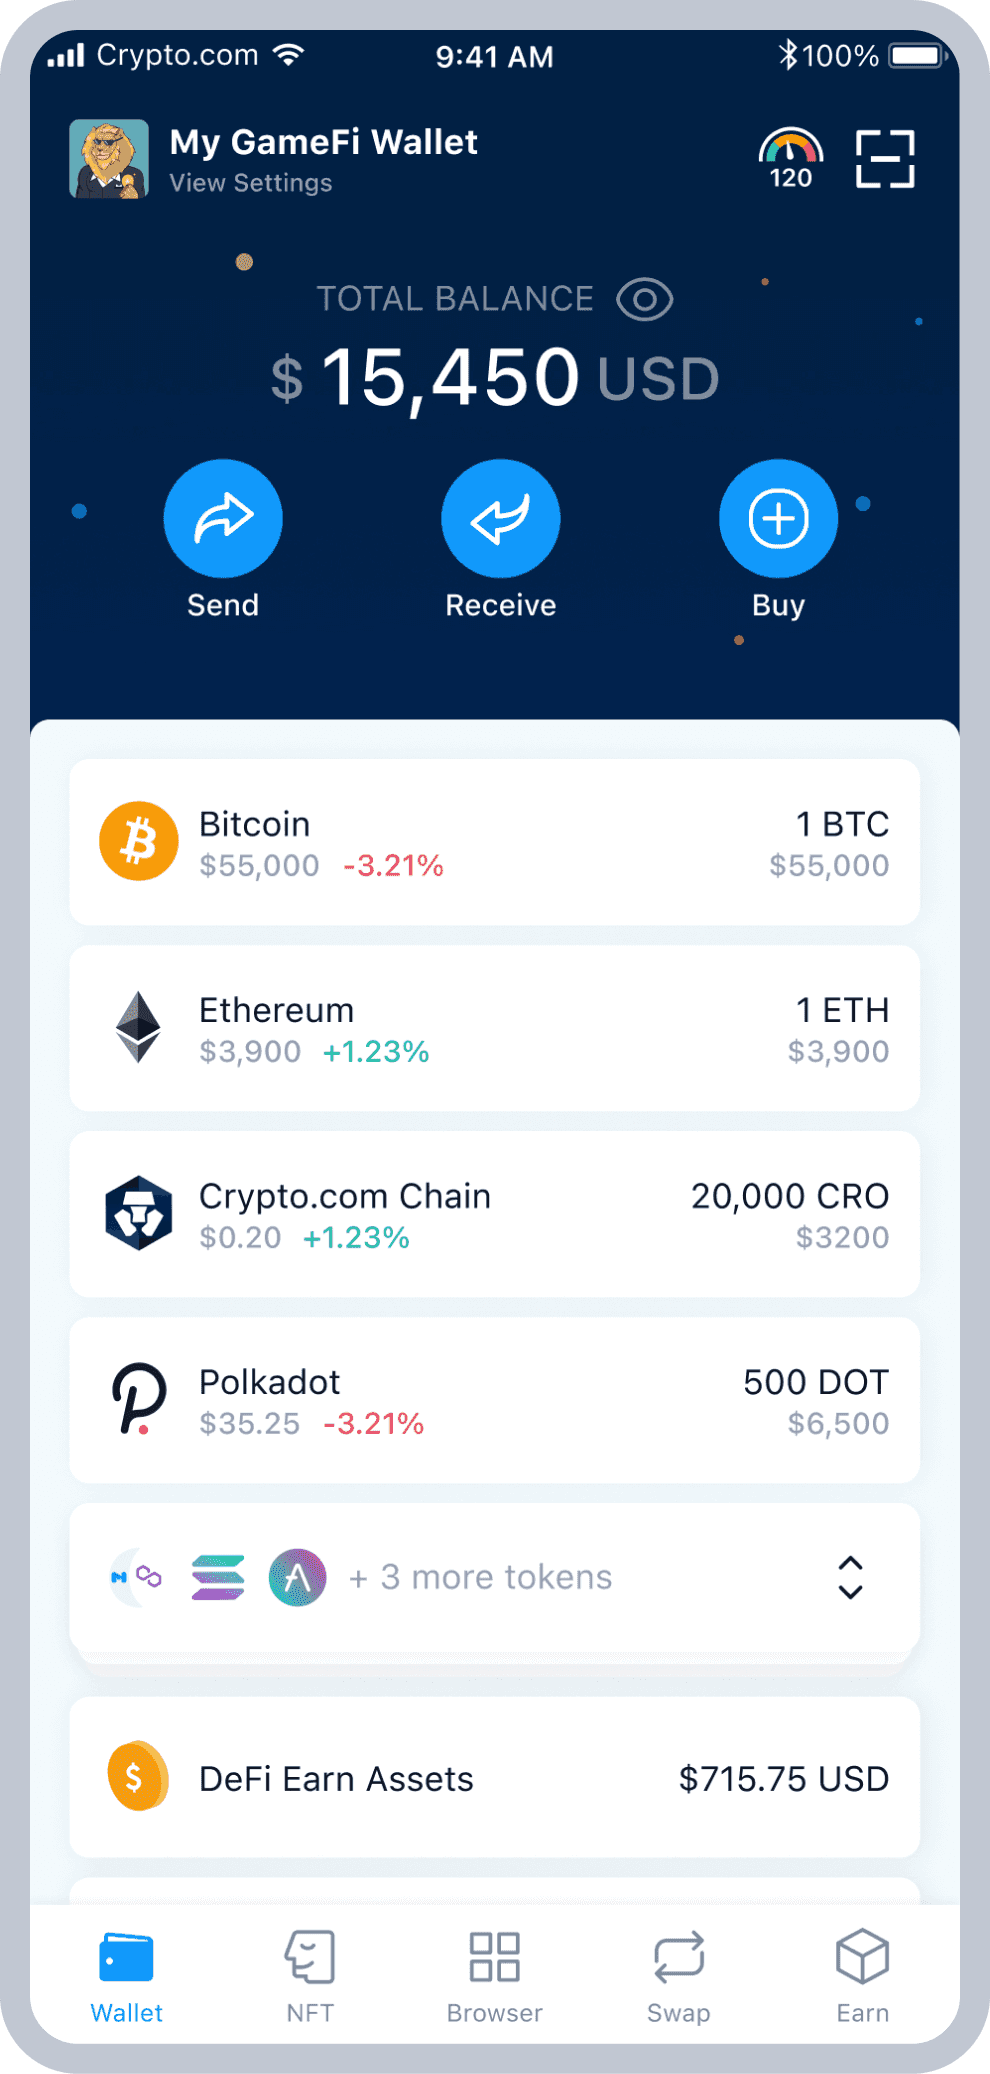 Defi wallet crypto earn crypto.com coin price today